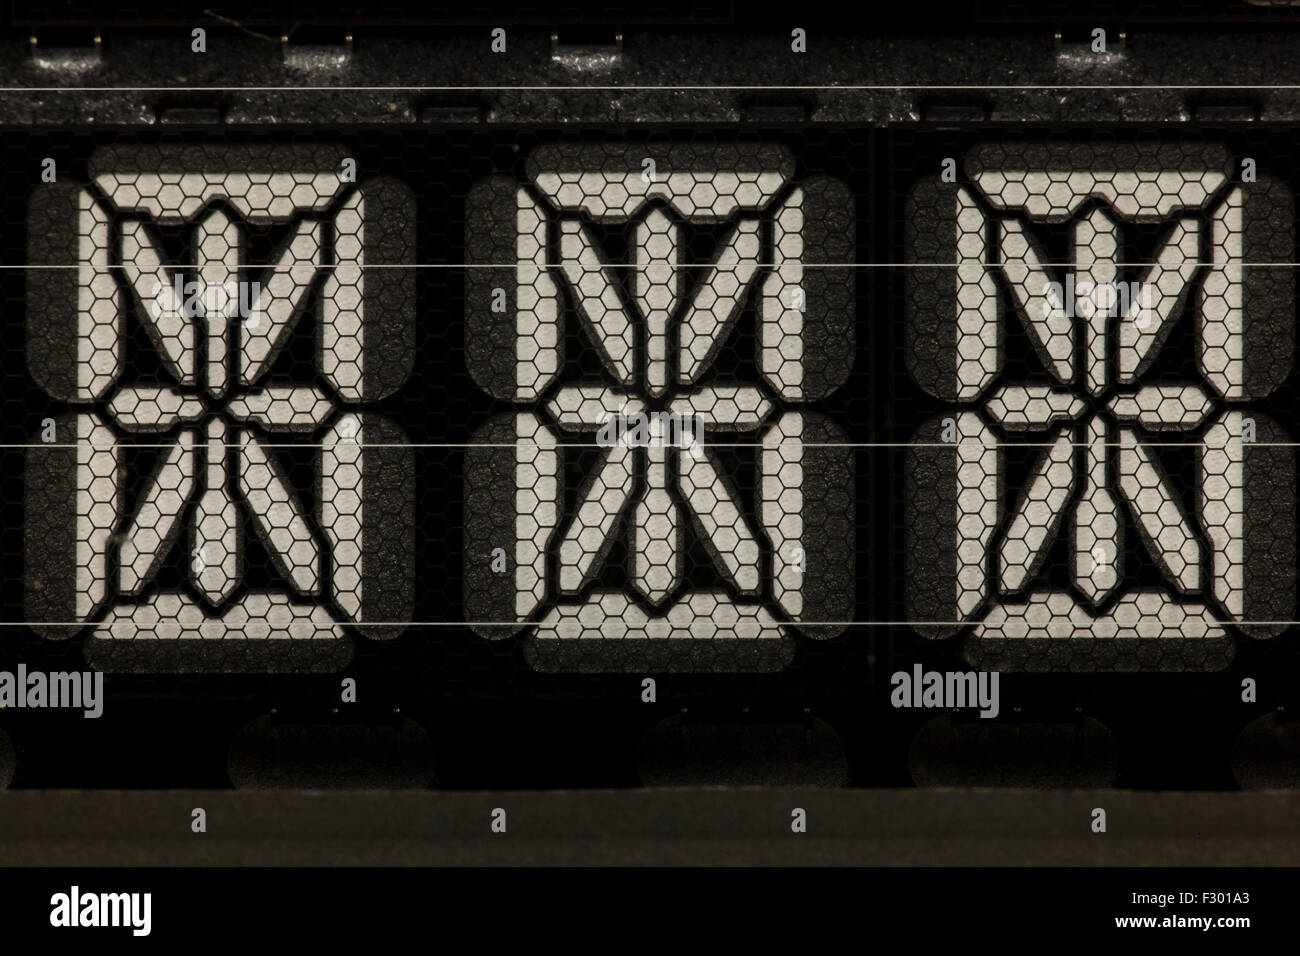 Affichage LED 9 segments utilisés sur l'horloge numérique Banque D'Images